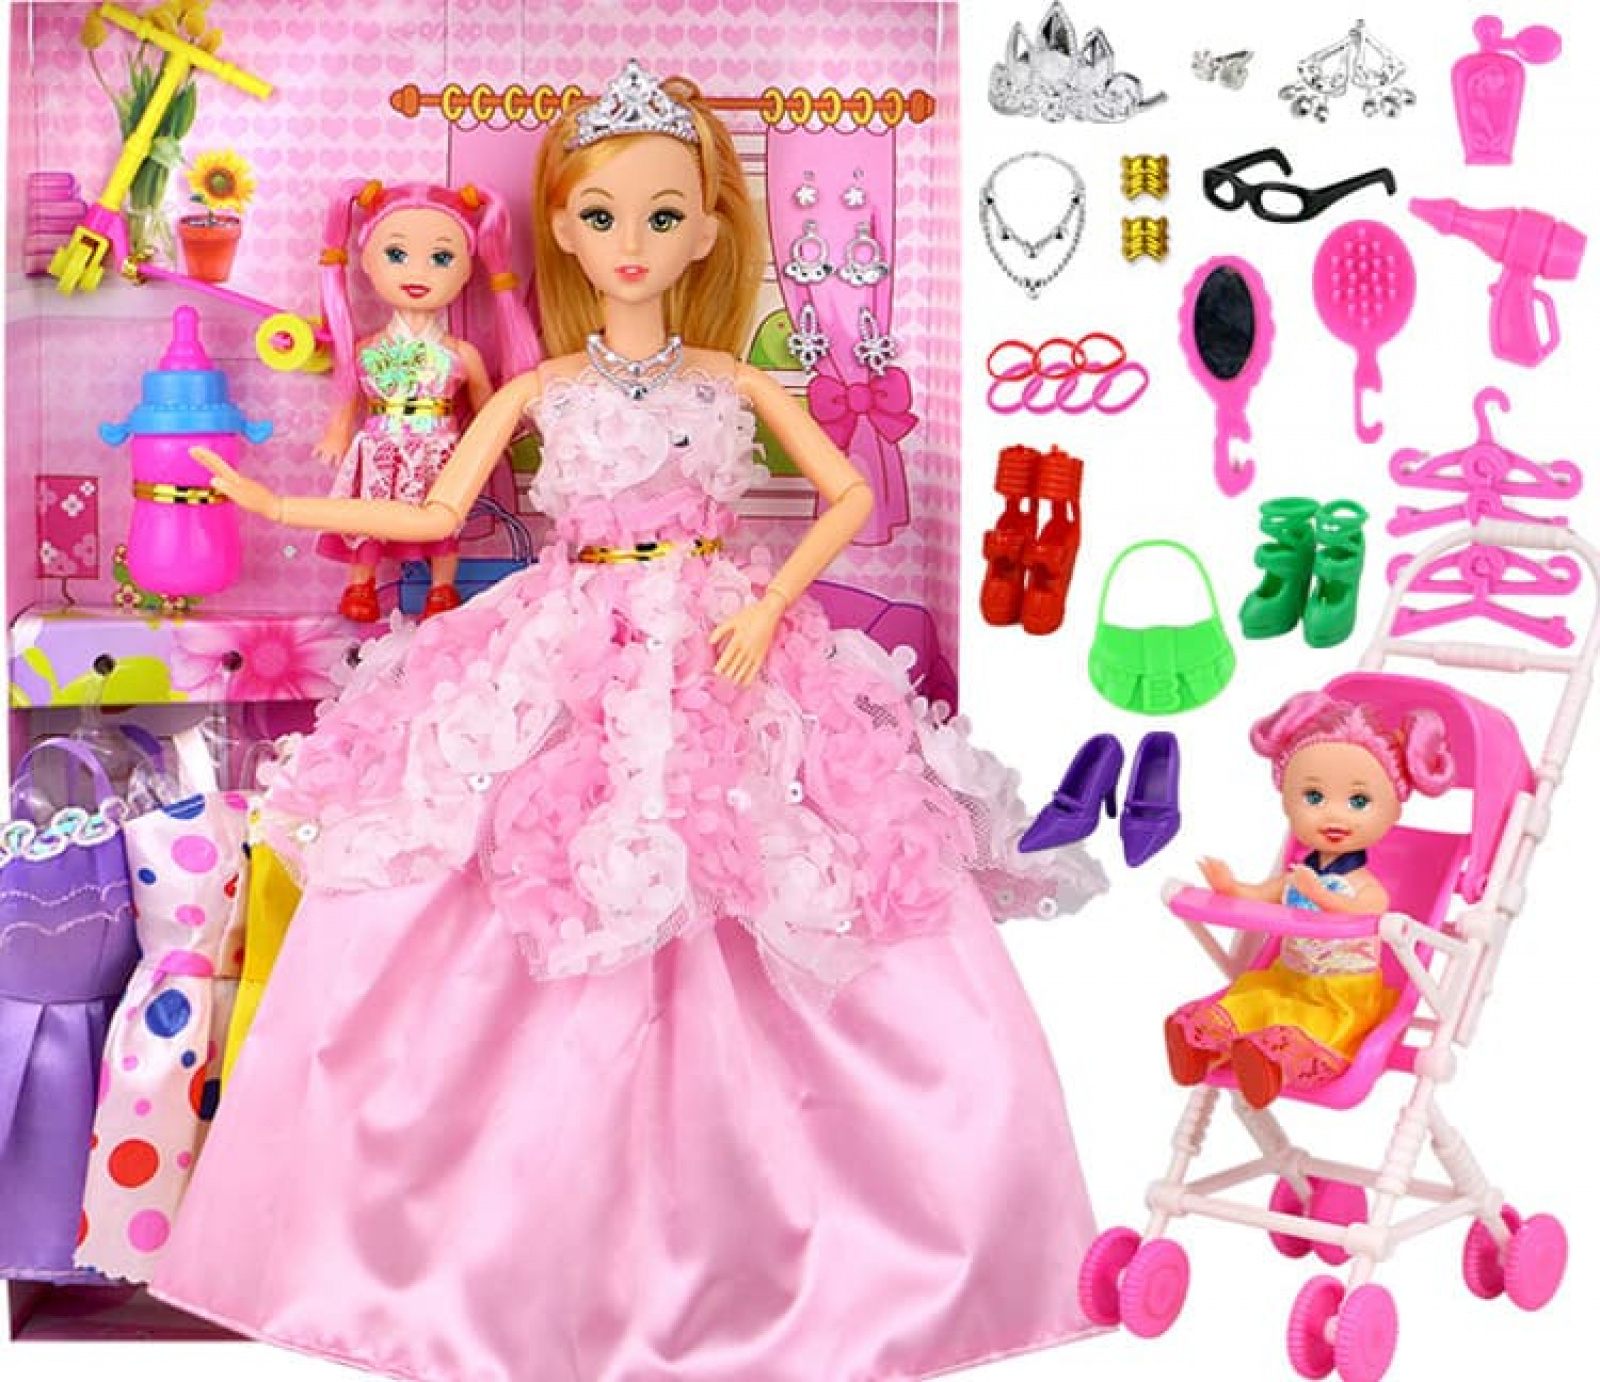 Đồ chơi búp bê Barbie cho bé gái xinh đẹp 025